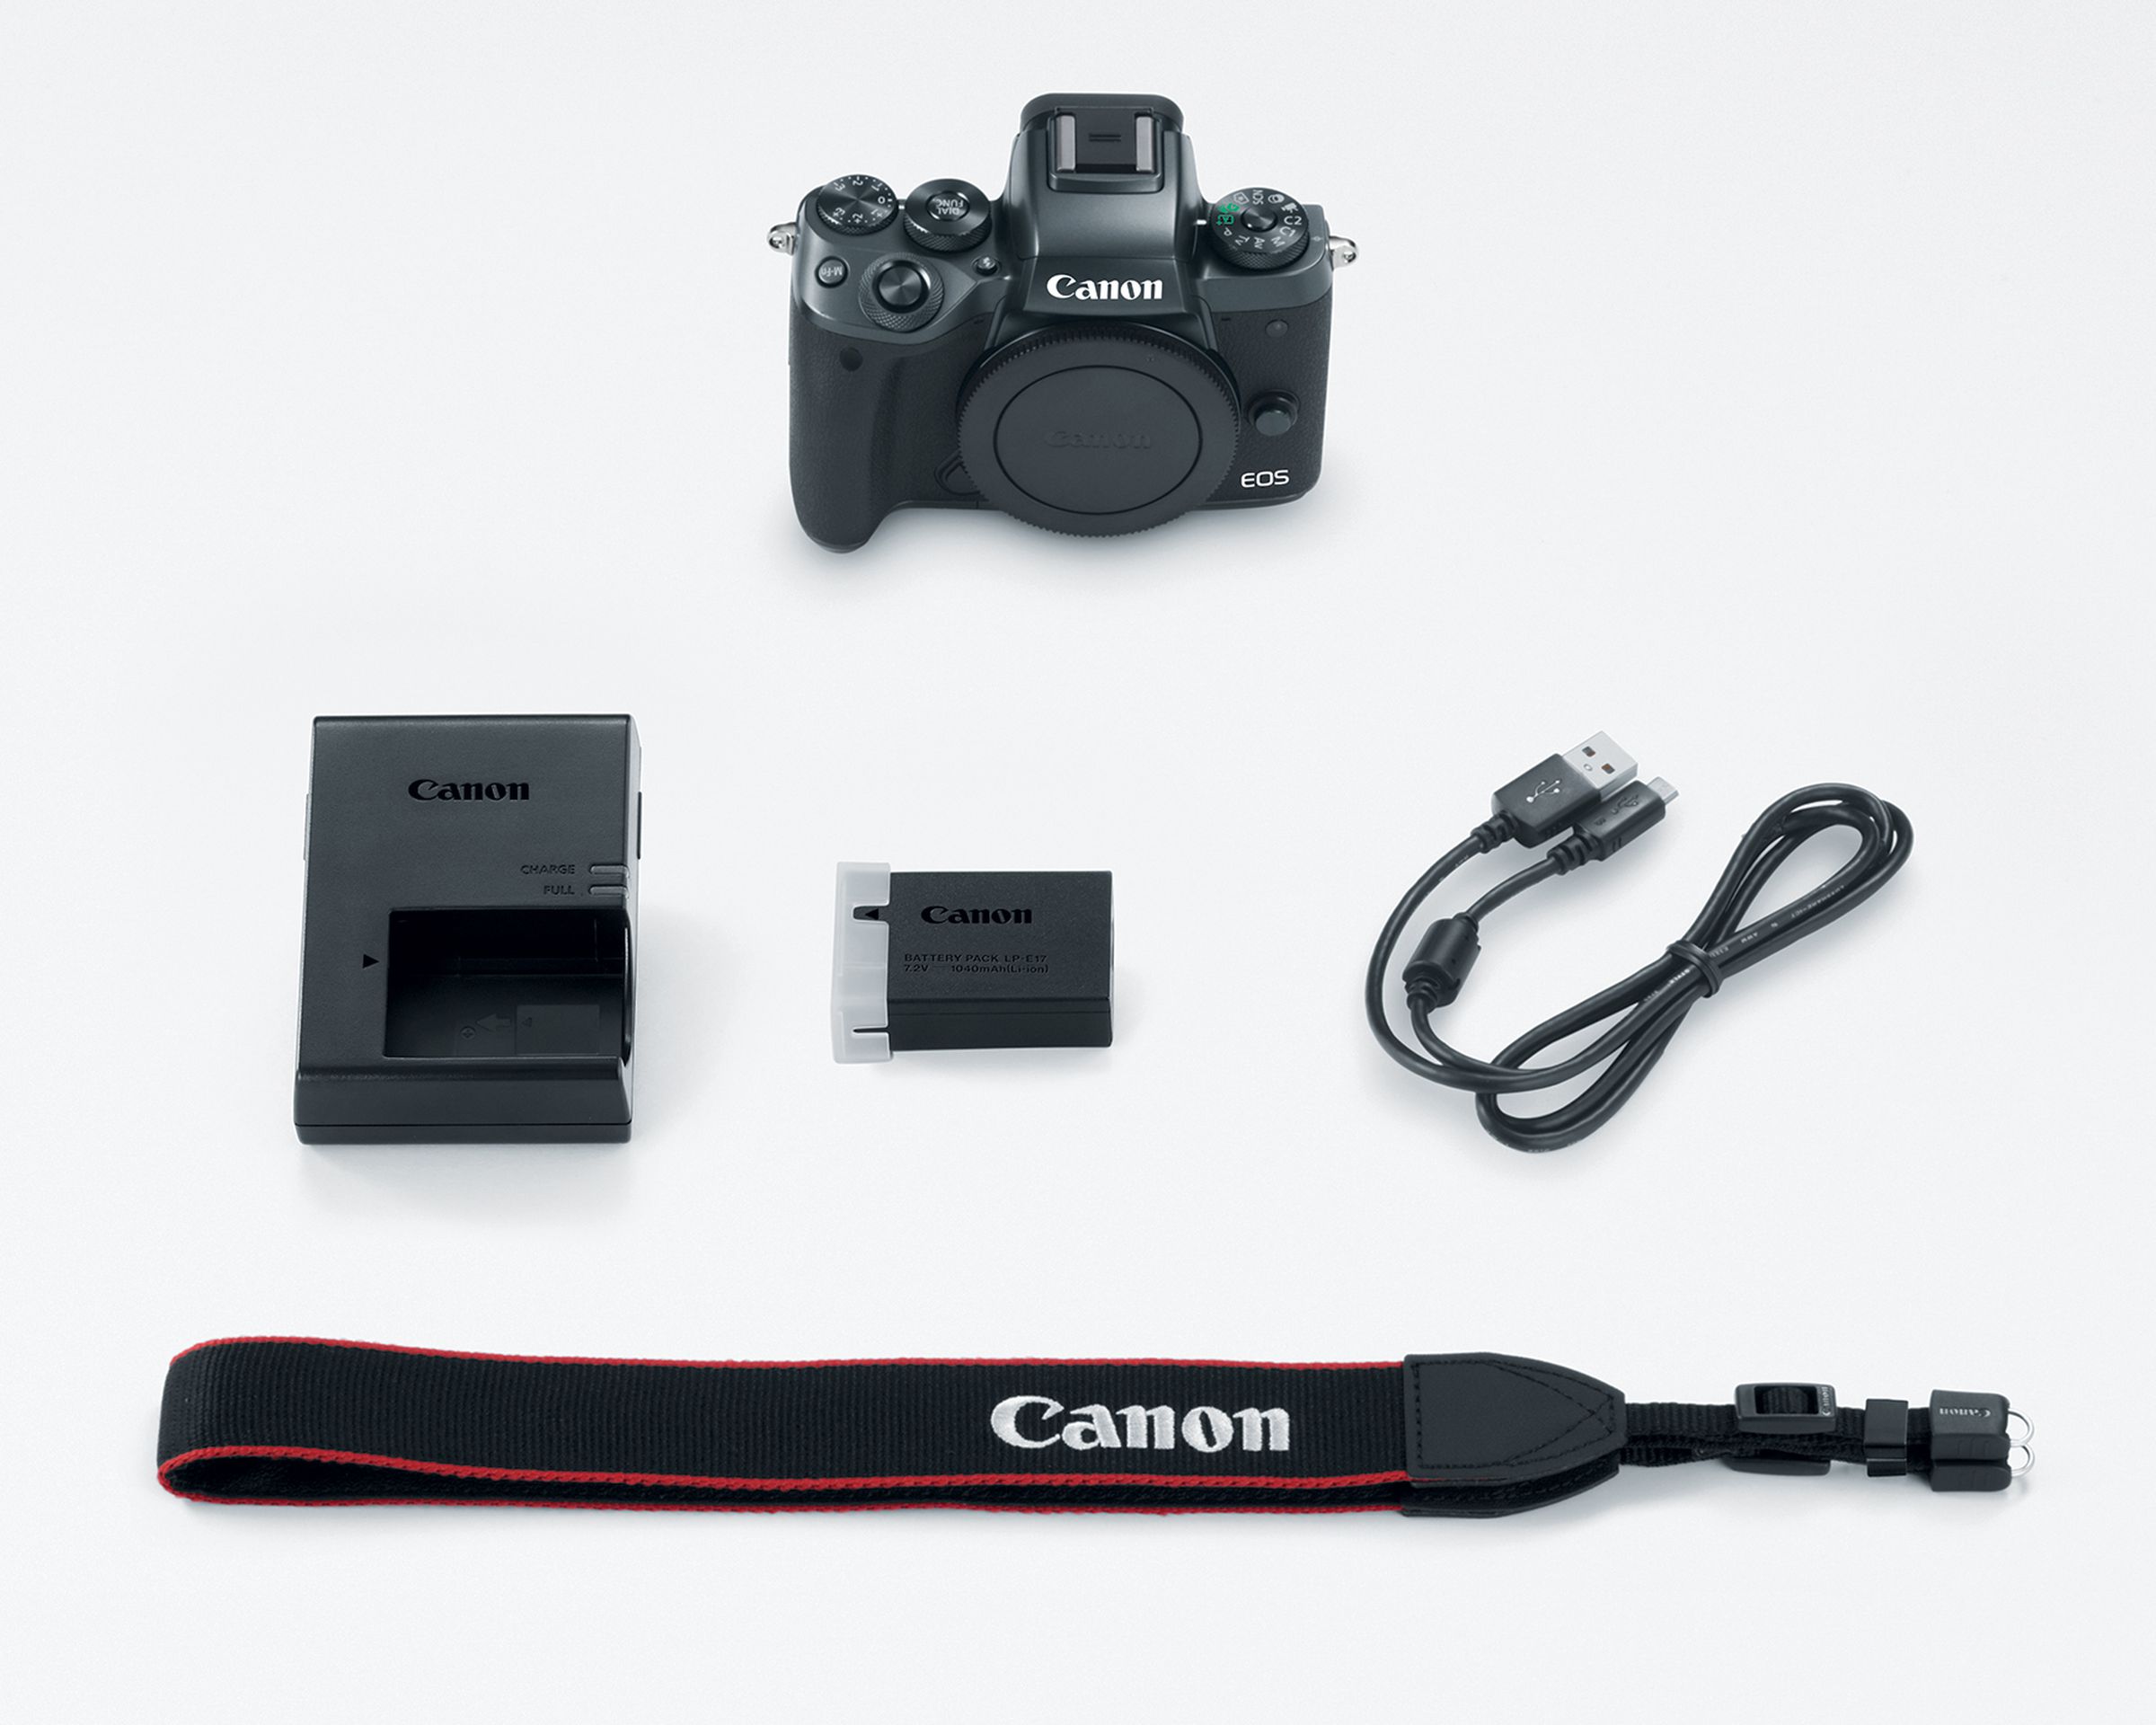 Canon EOS M5 in photos